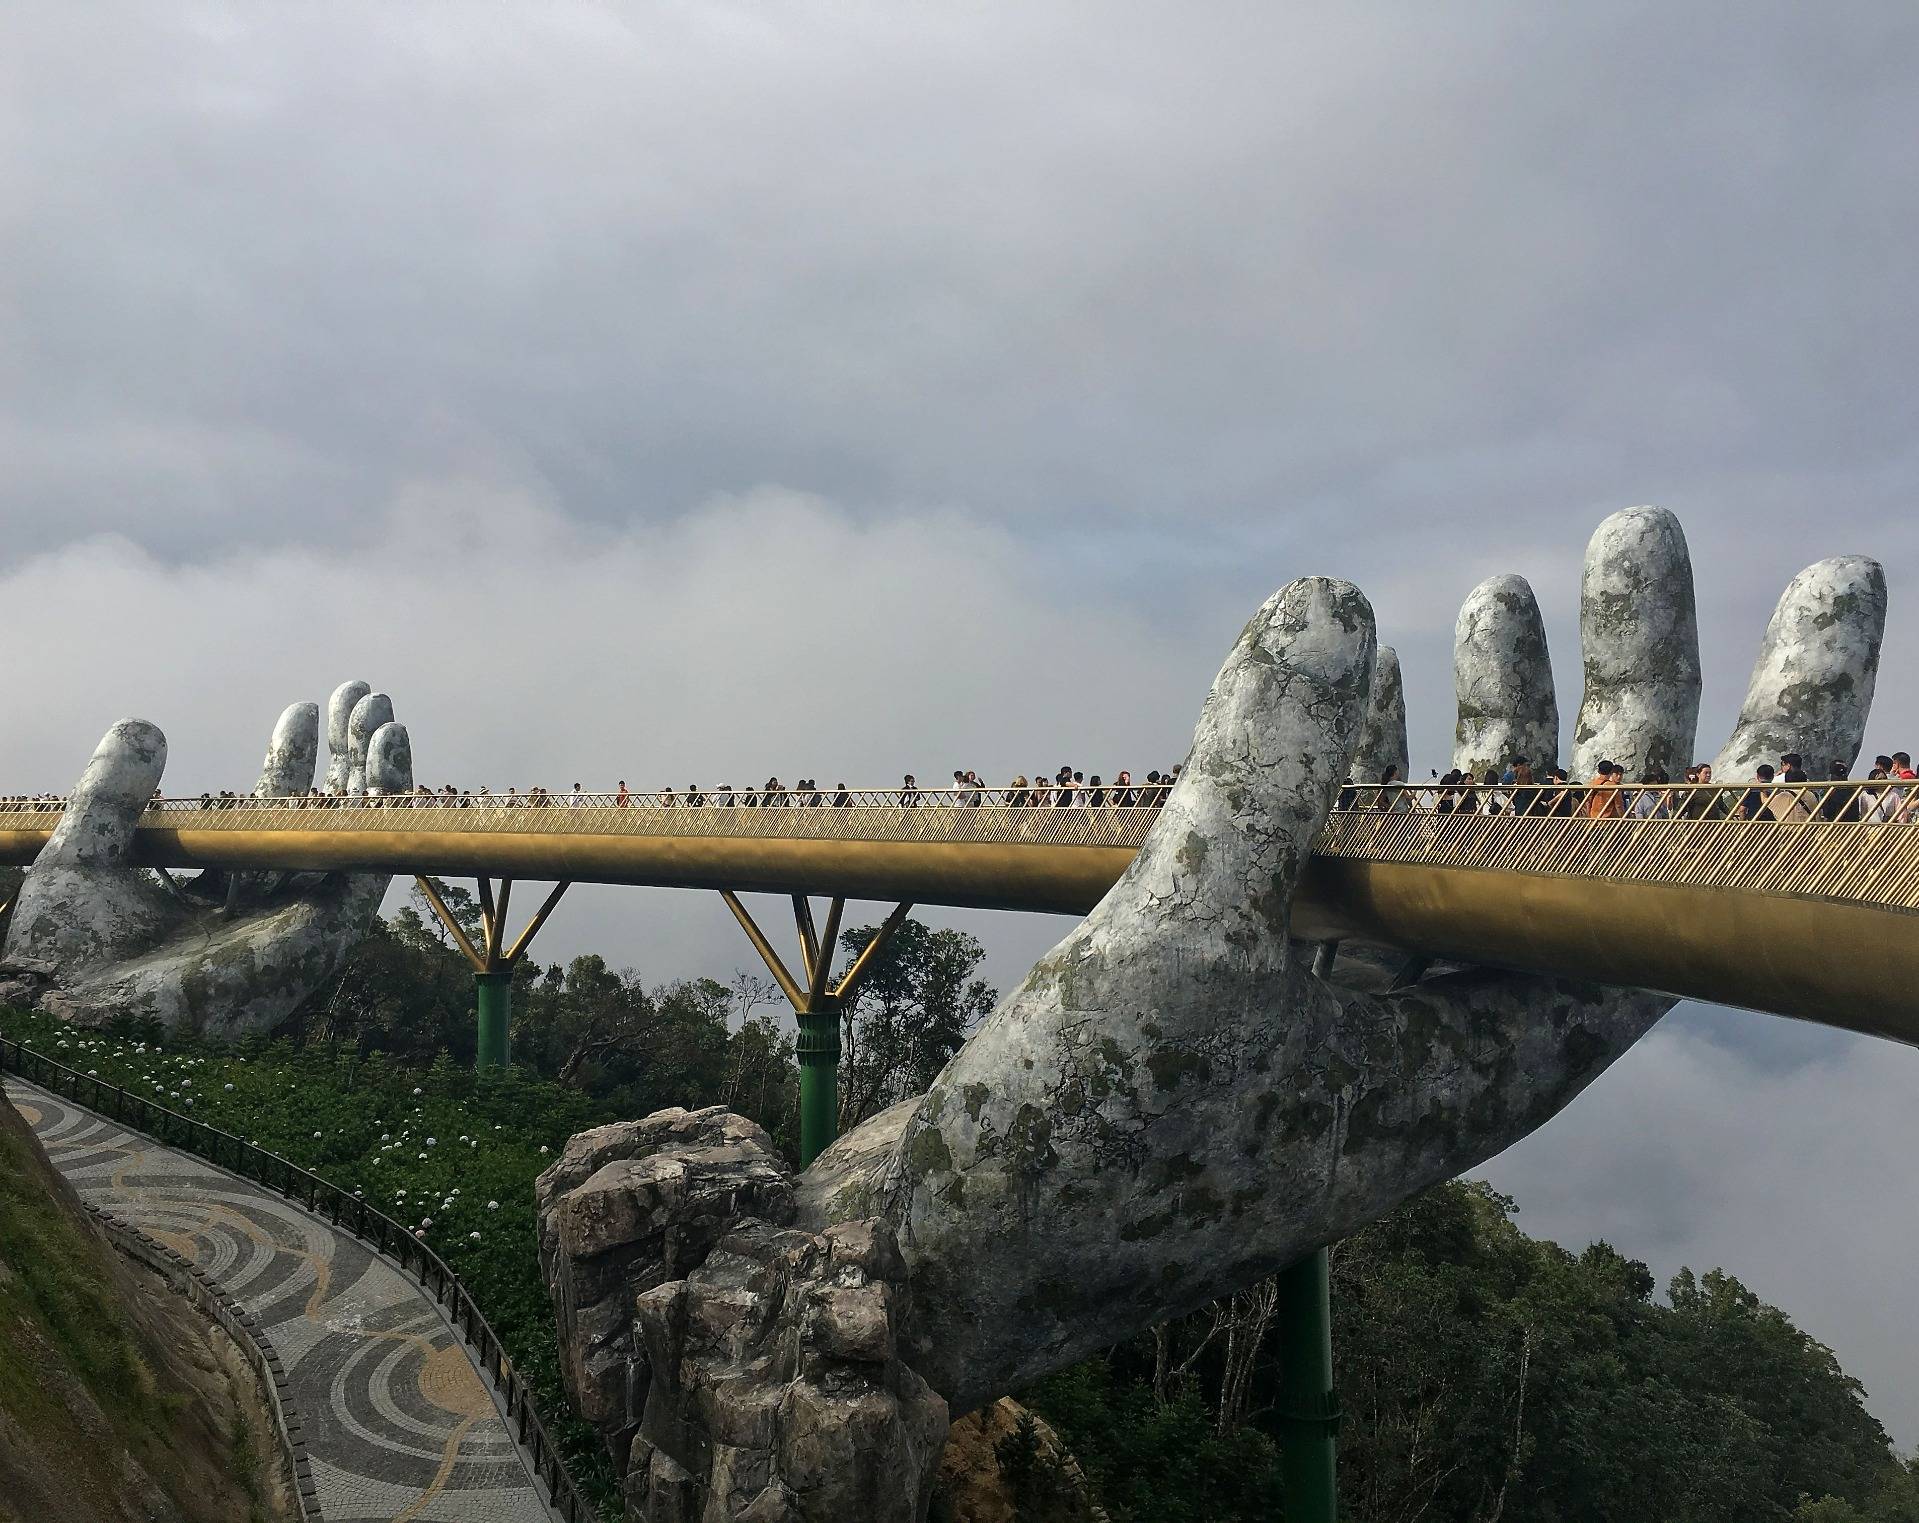 Golden Bridge "In the Hands of God" in Ba Na Hills Park, Danang.